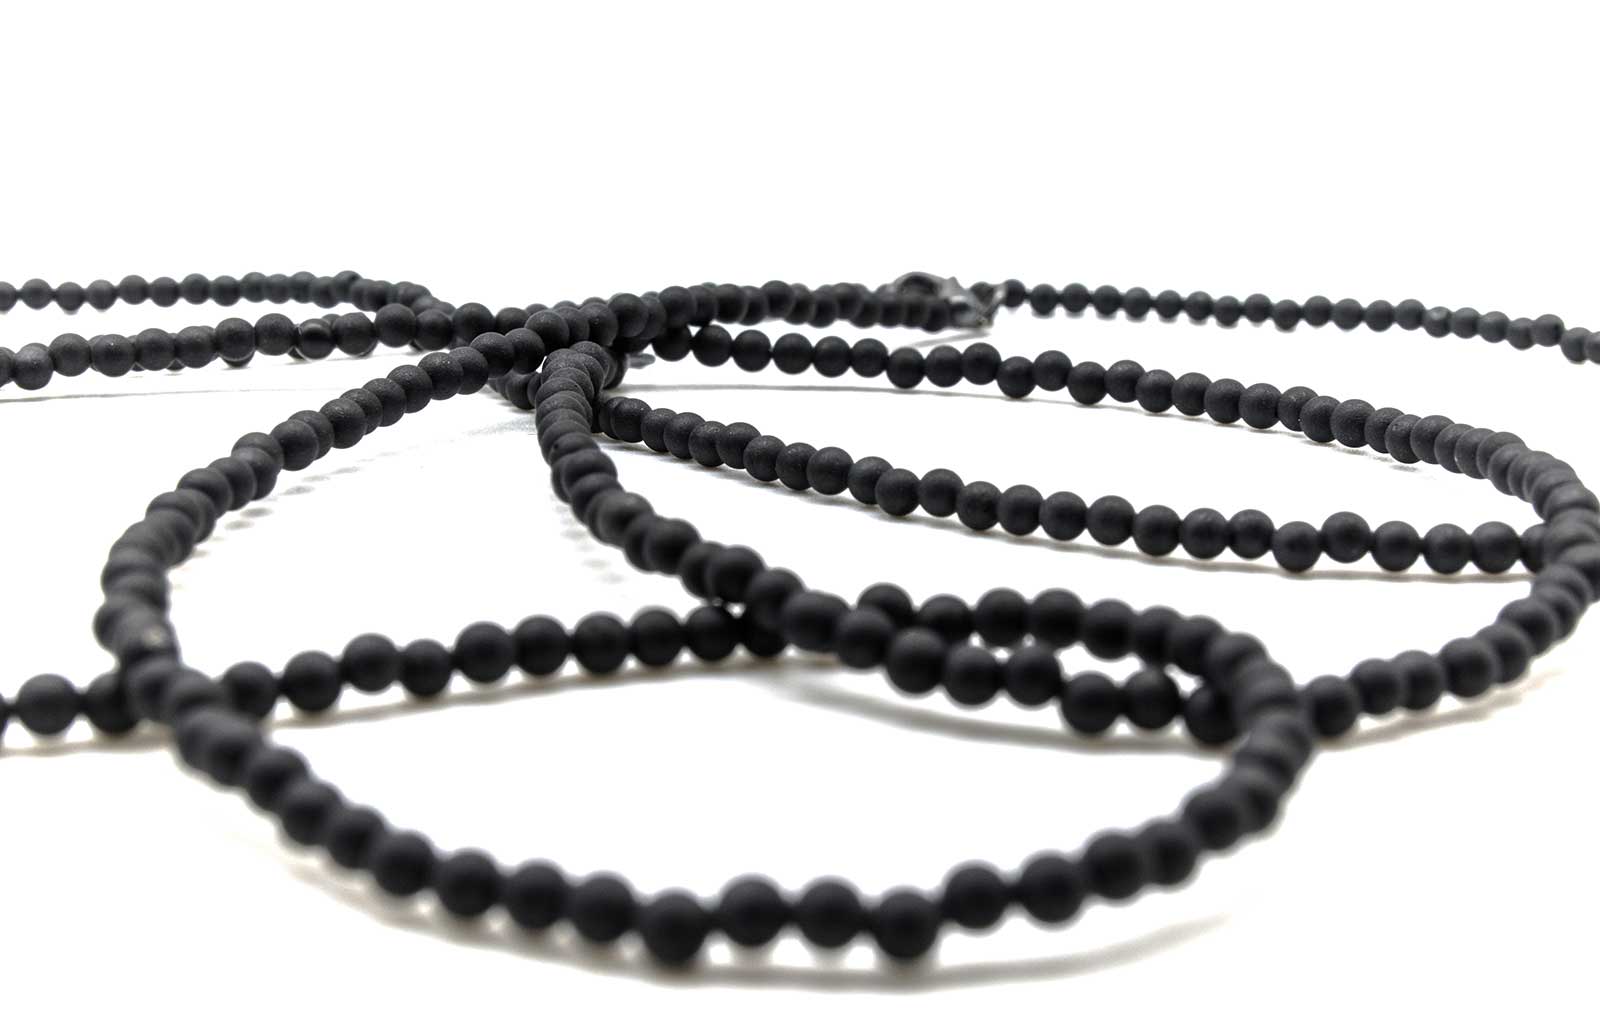 Spinel Gemstones | Richly Black Love Beads | Hand-Ground